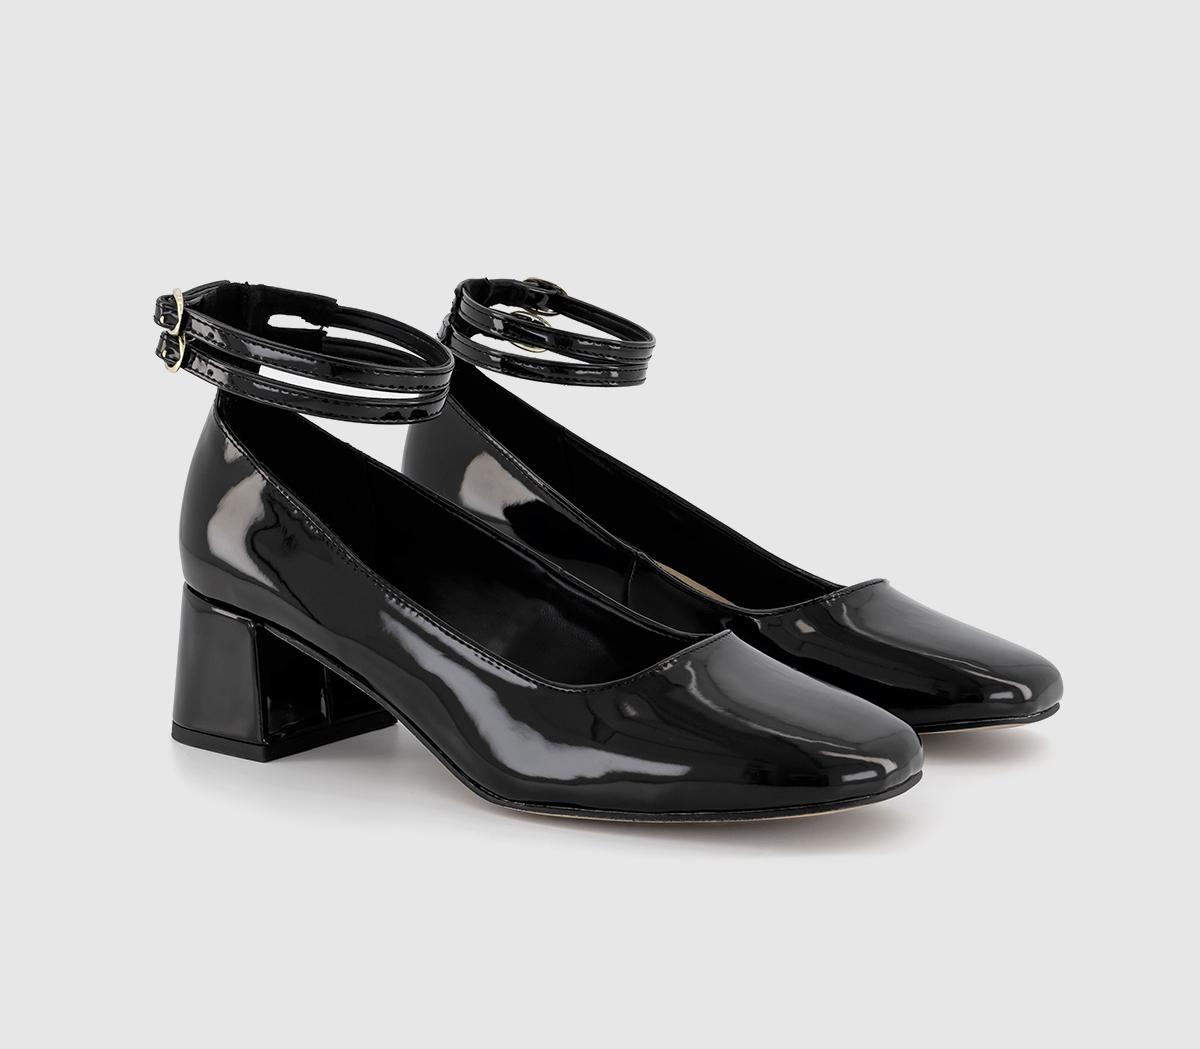 OFFICE Womens Milton Cross Strap Court Shoes Black, 4